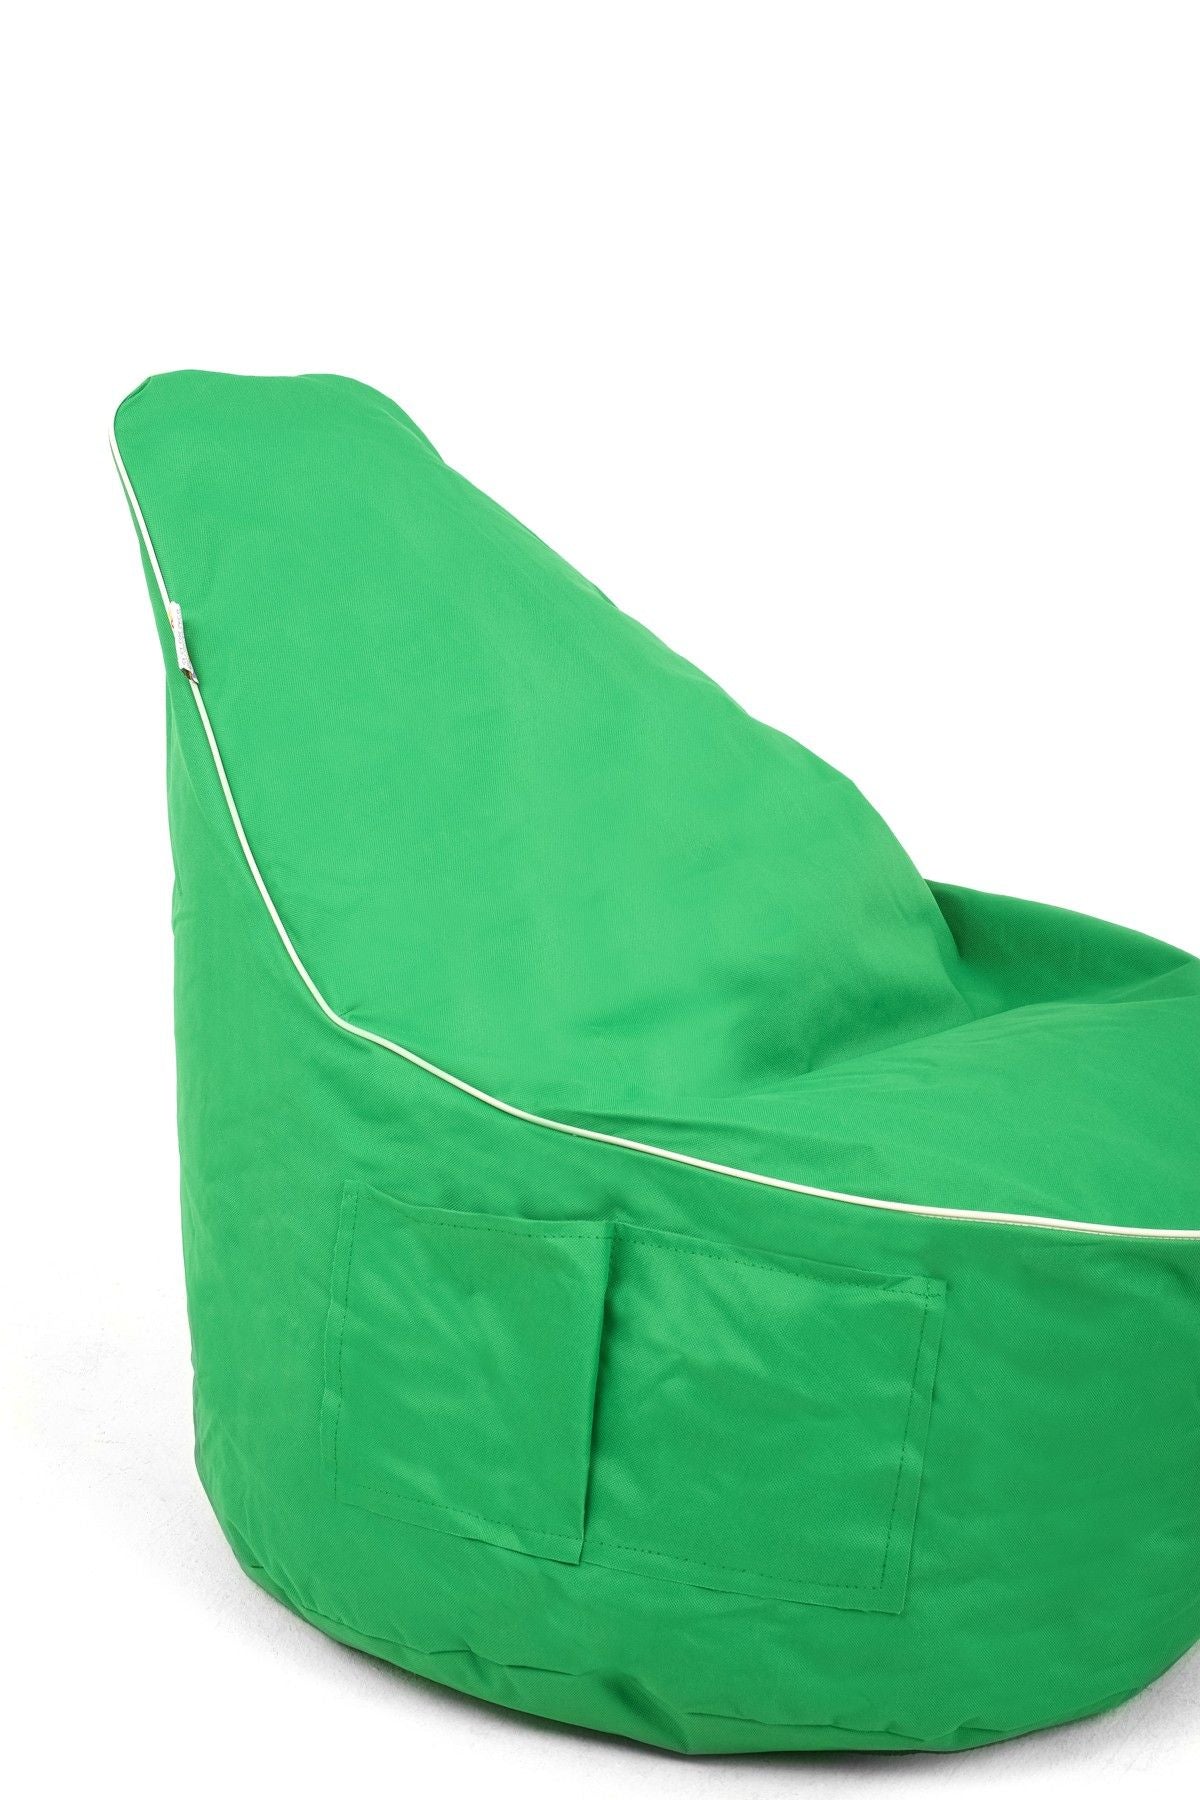 Golf - Green - Bean Bag